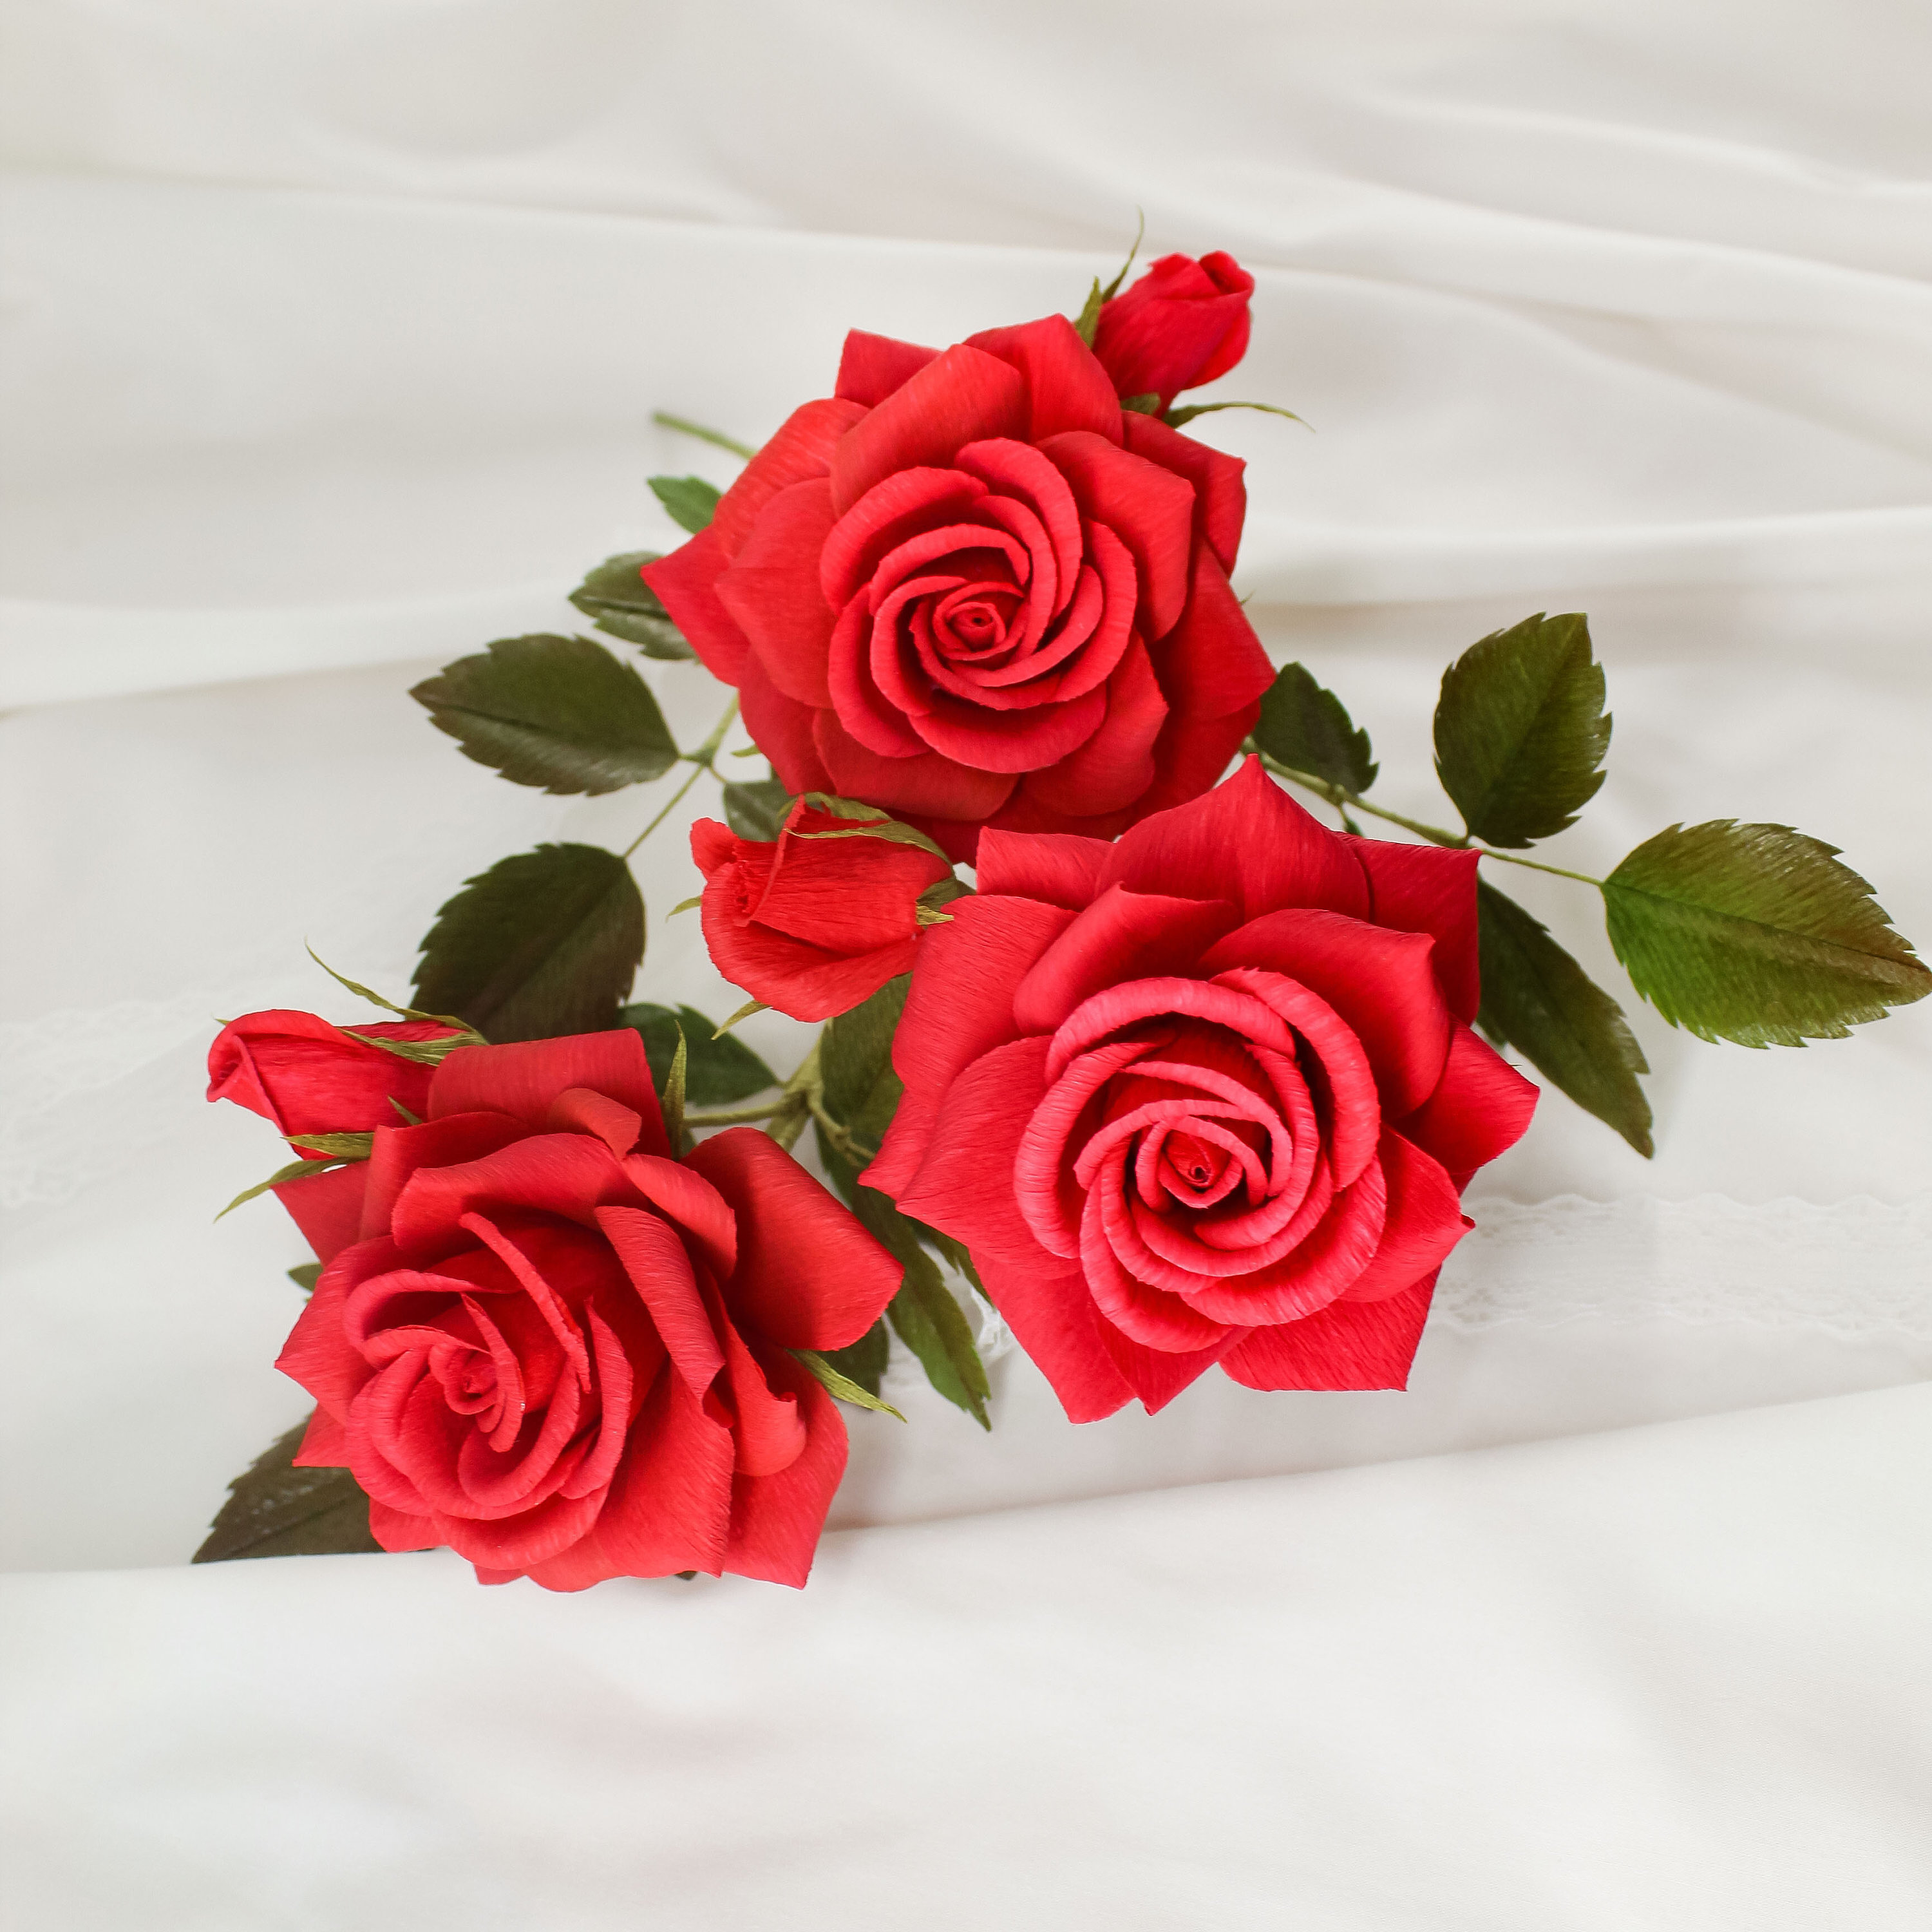 Rose di carta crespa, bouquet di rose di carta, bouquet di fiori di carta,  regalo di carta per il primo anniversario, bouquet da damigella d'onore  rosso, fiori di carta realistici 